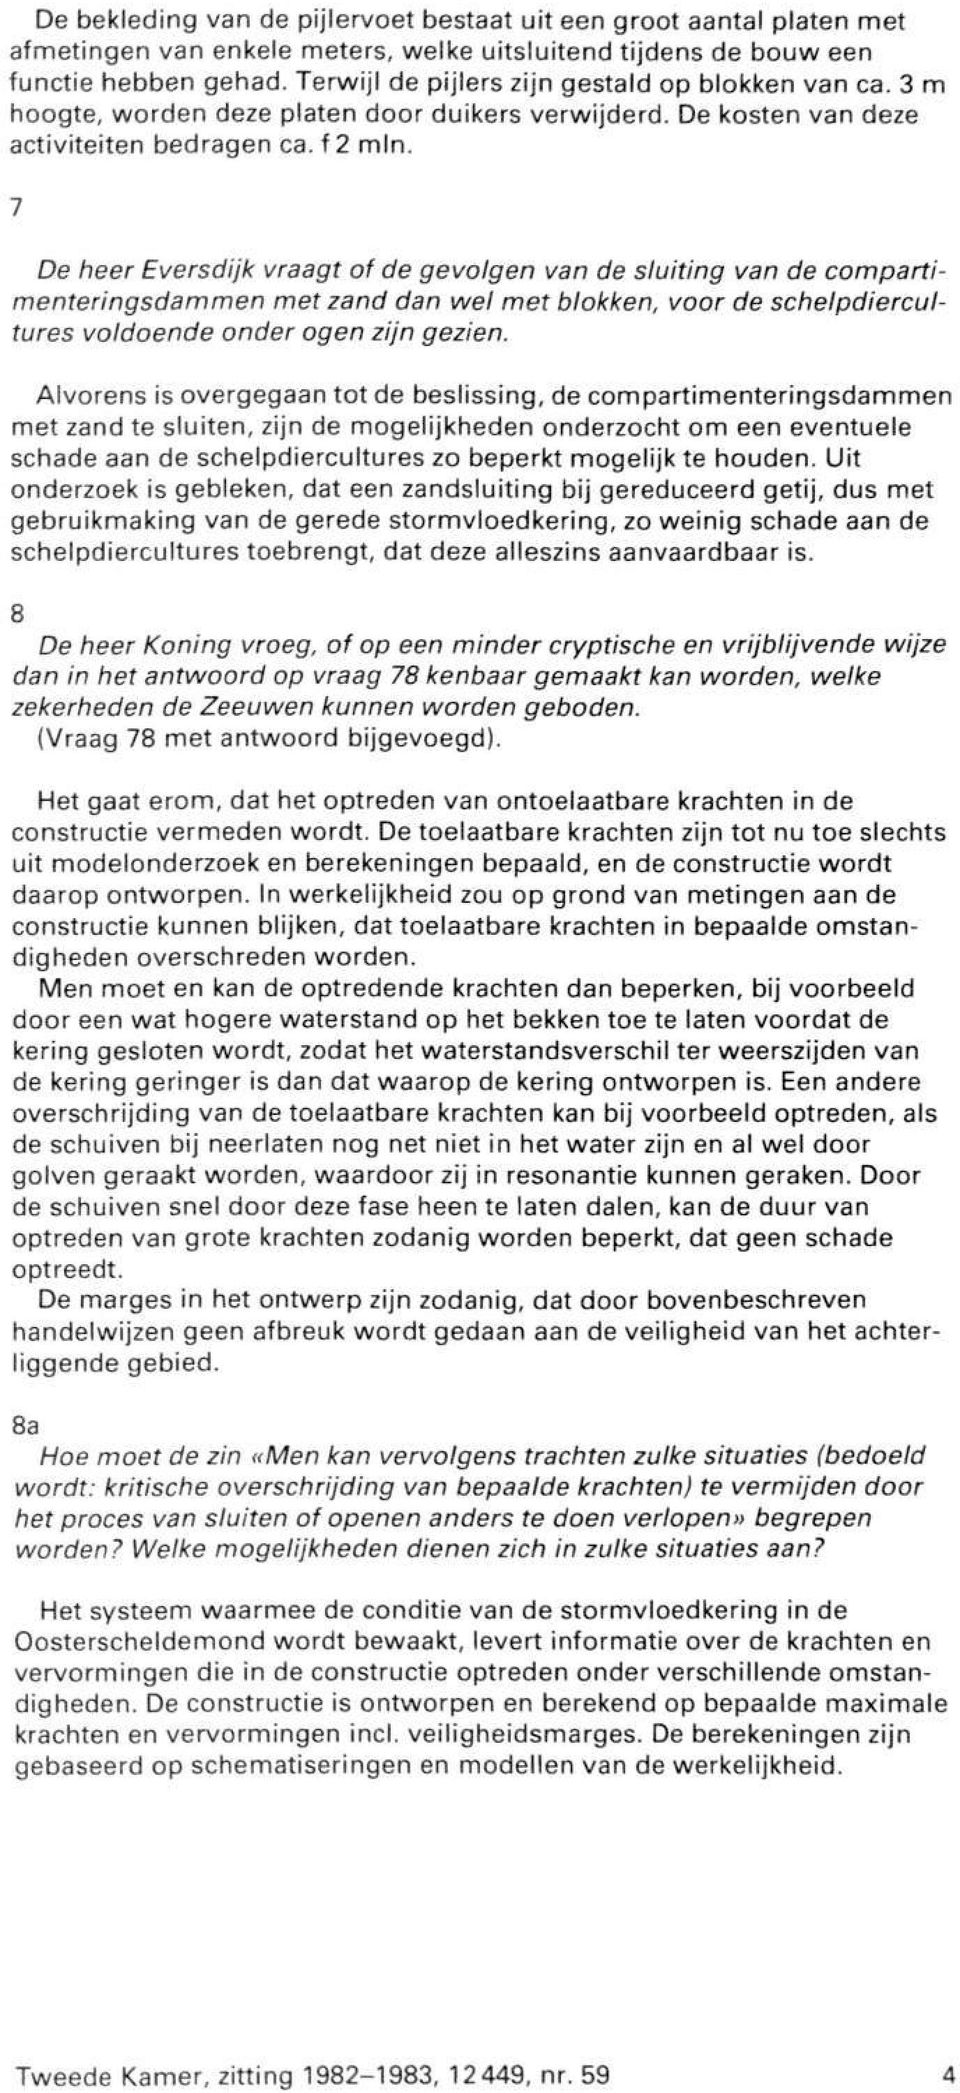 7 De heer Eversdijk vraagt of de gevolgen van de sluiting van de compartimenteringsdammen met zand dan wel met blokken, voor de schelpdiercultures voldoende onder ogen zijn gezien.